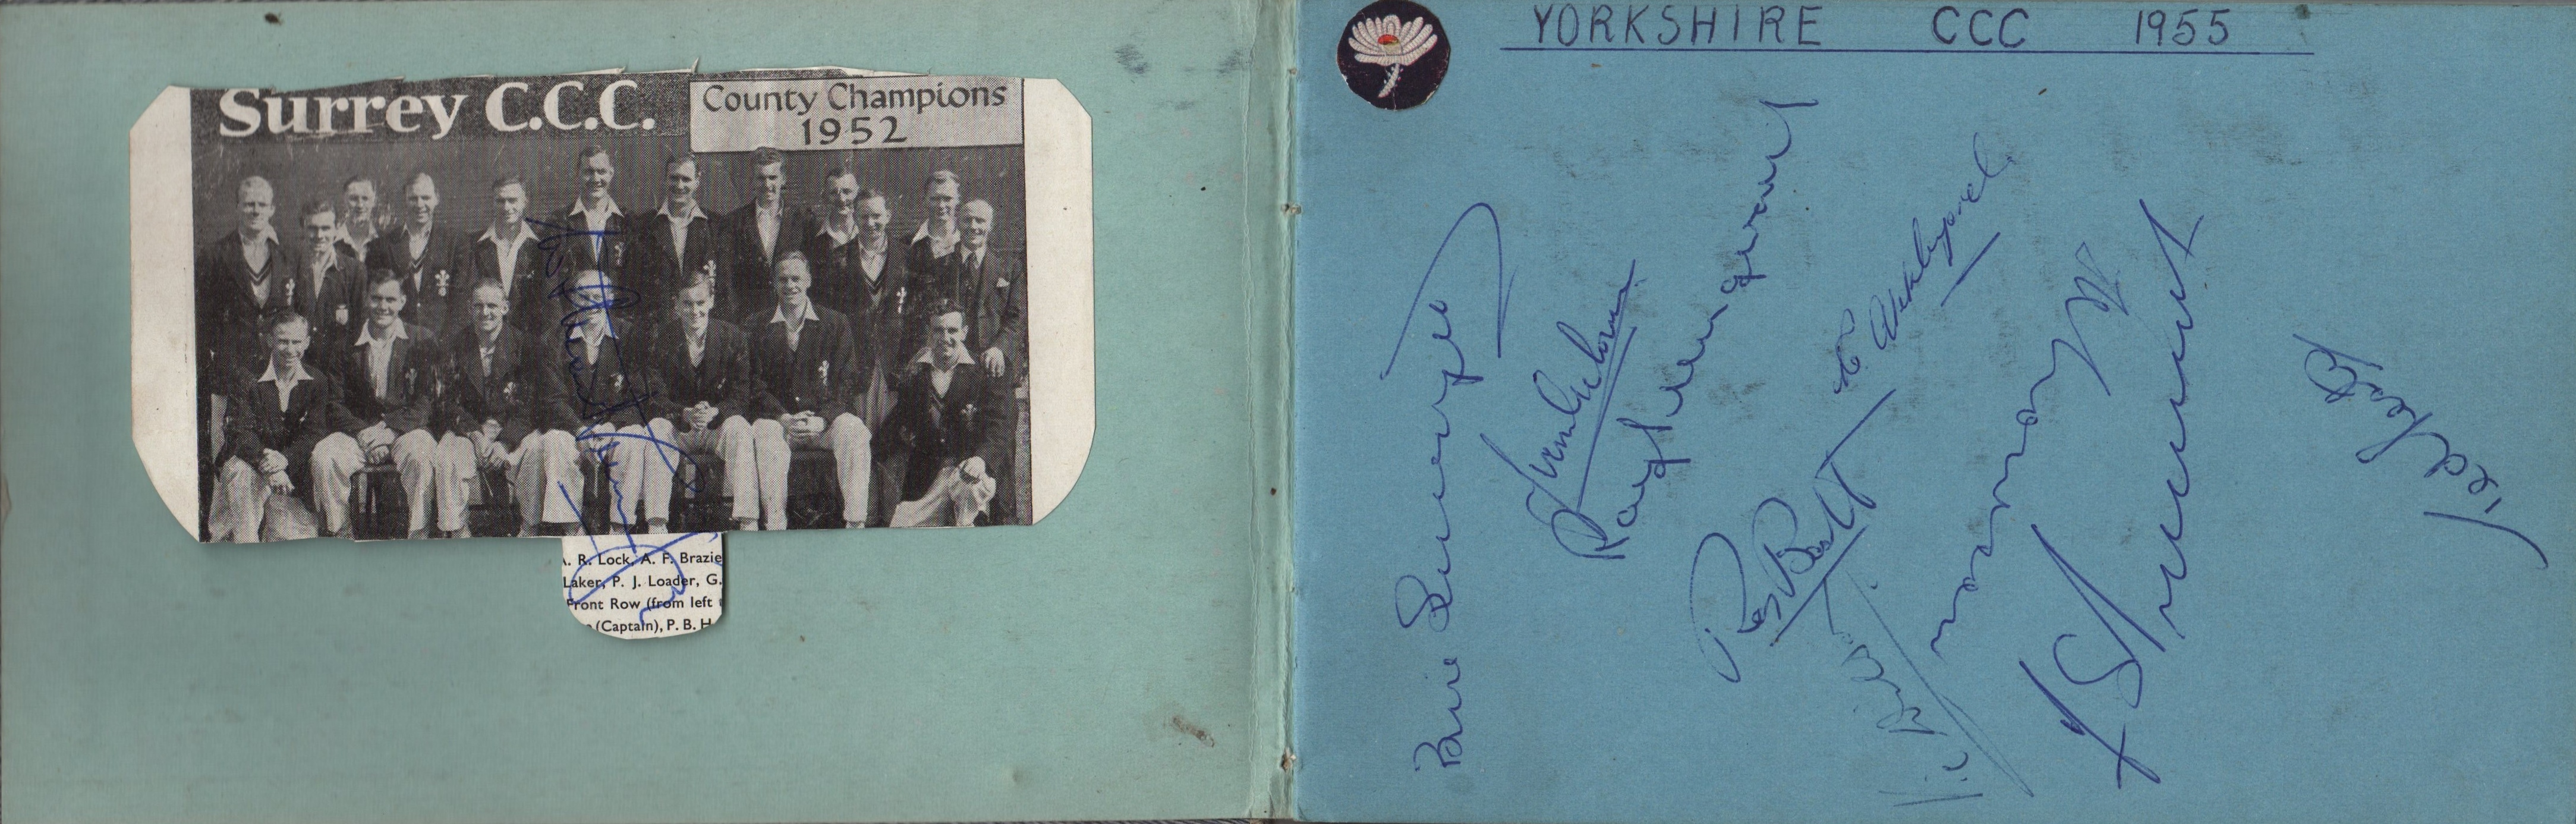 AUTOGRAPH ALBUM: An autograph album cont - Image 2 of 16